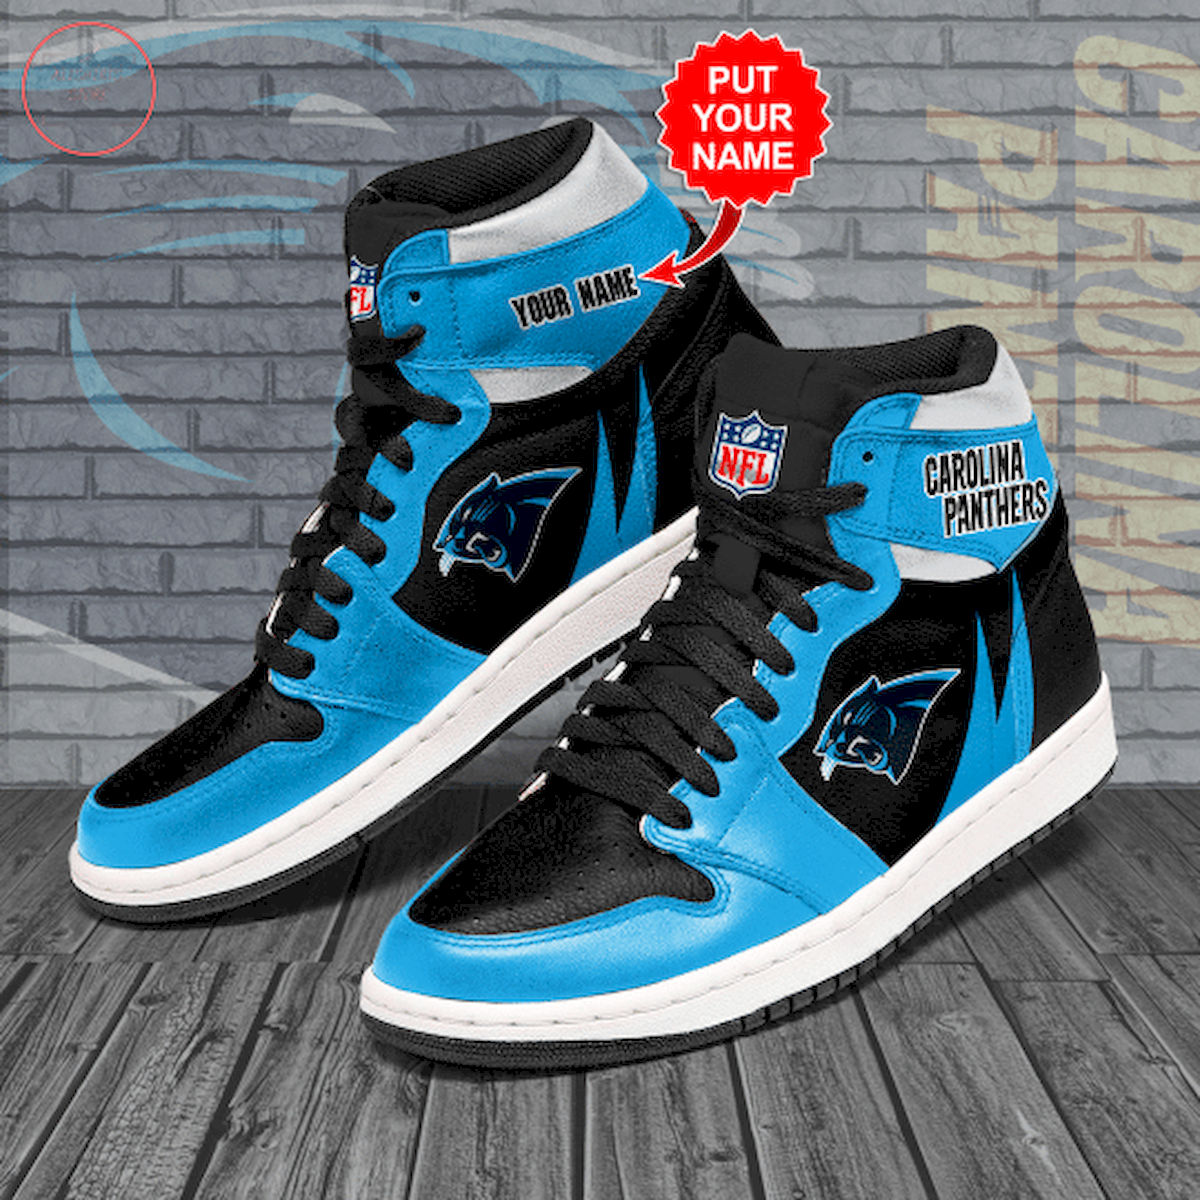 Carolina Panthers NFL Customized Air Jordan 1 Sneakers